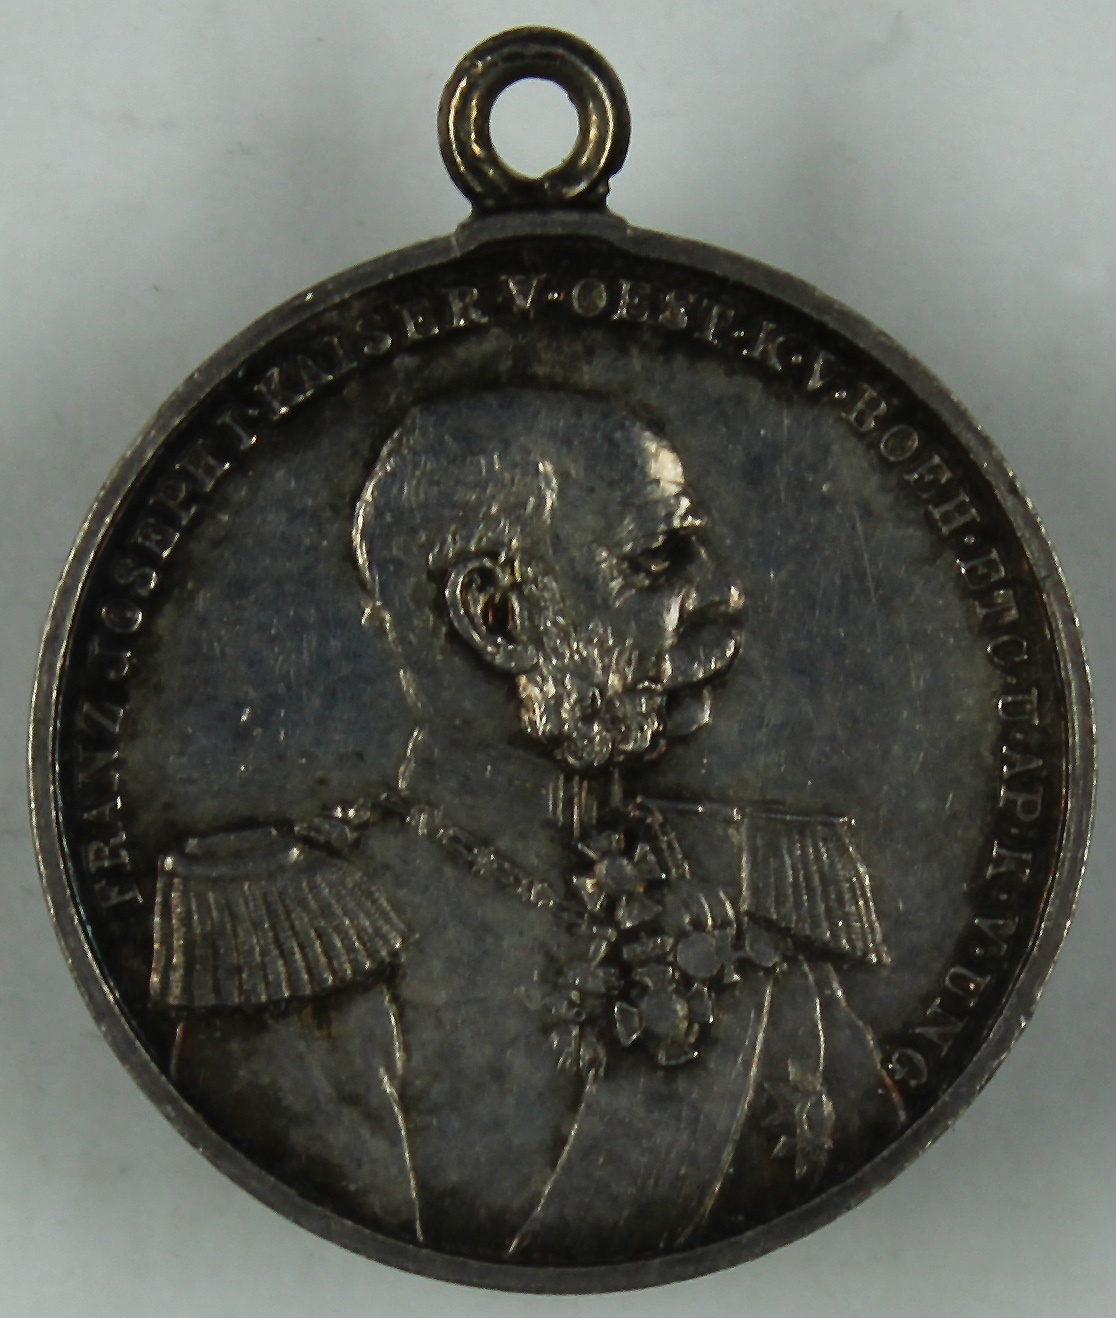 Anhänger für Medaille "Preußens tapferen Kriegern" 1899 (Museum Wolmirstedt RR-F)